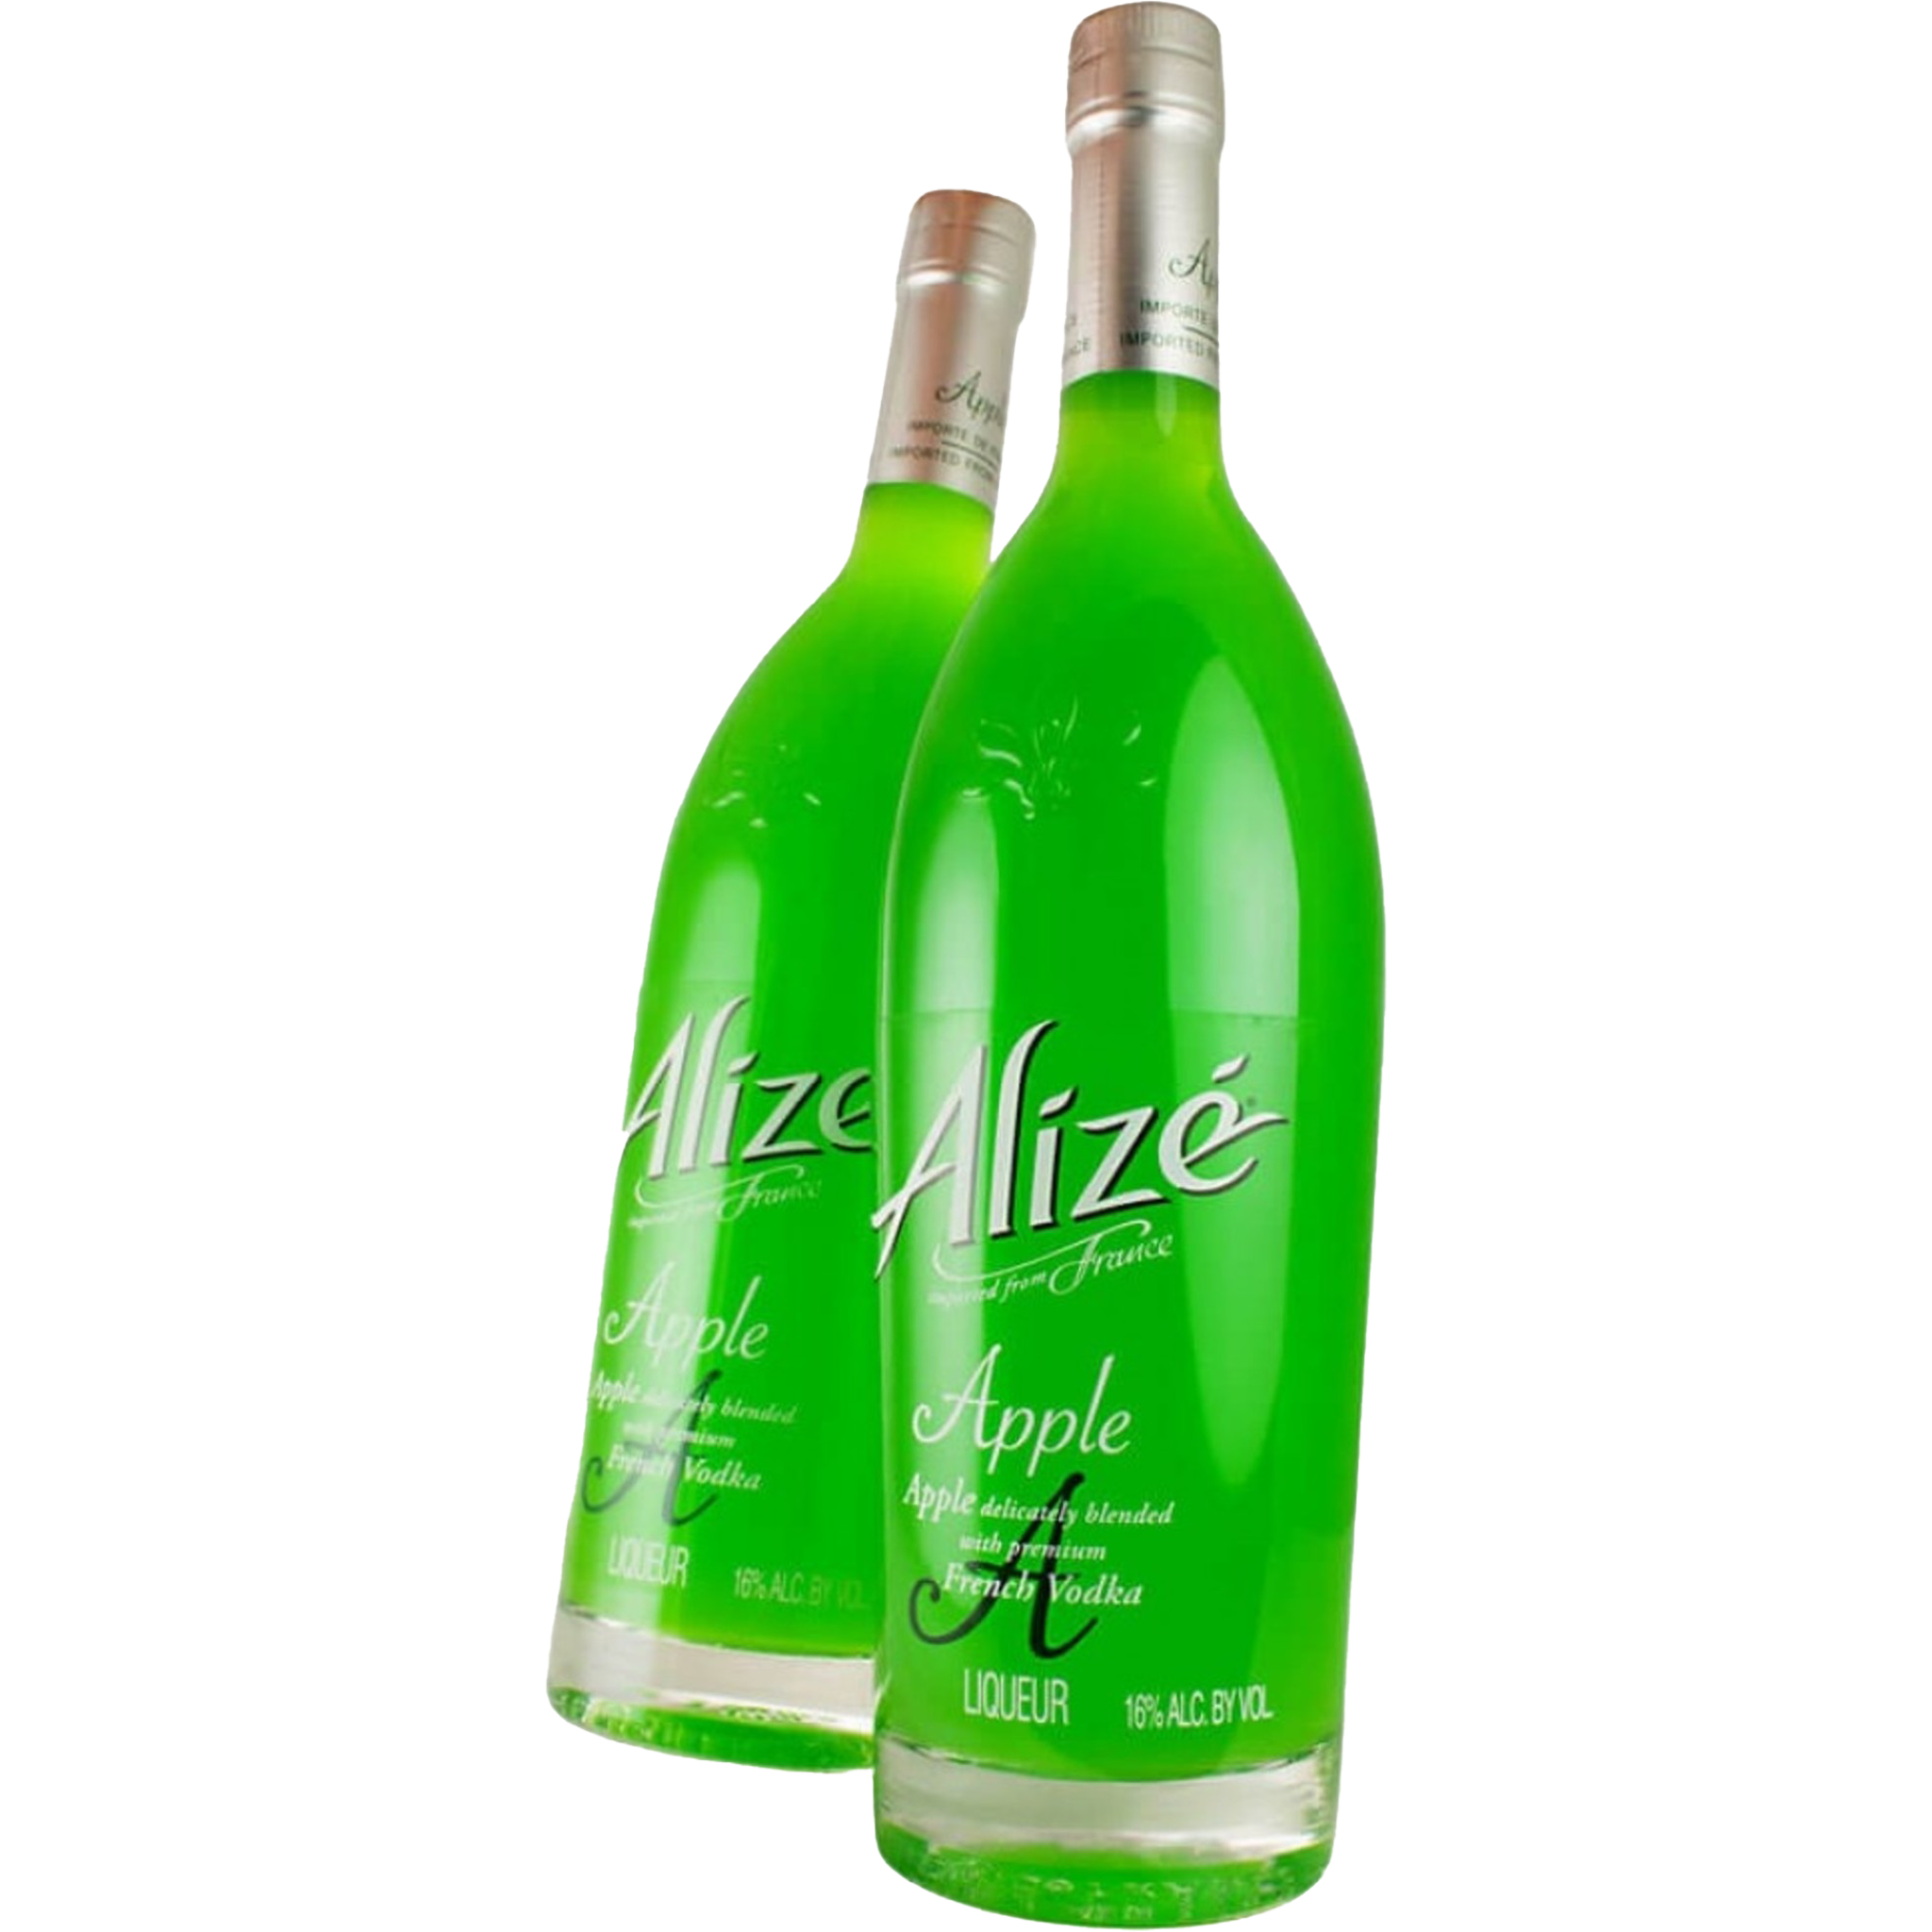 Alizé Apple 2 Bottles Combo